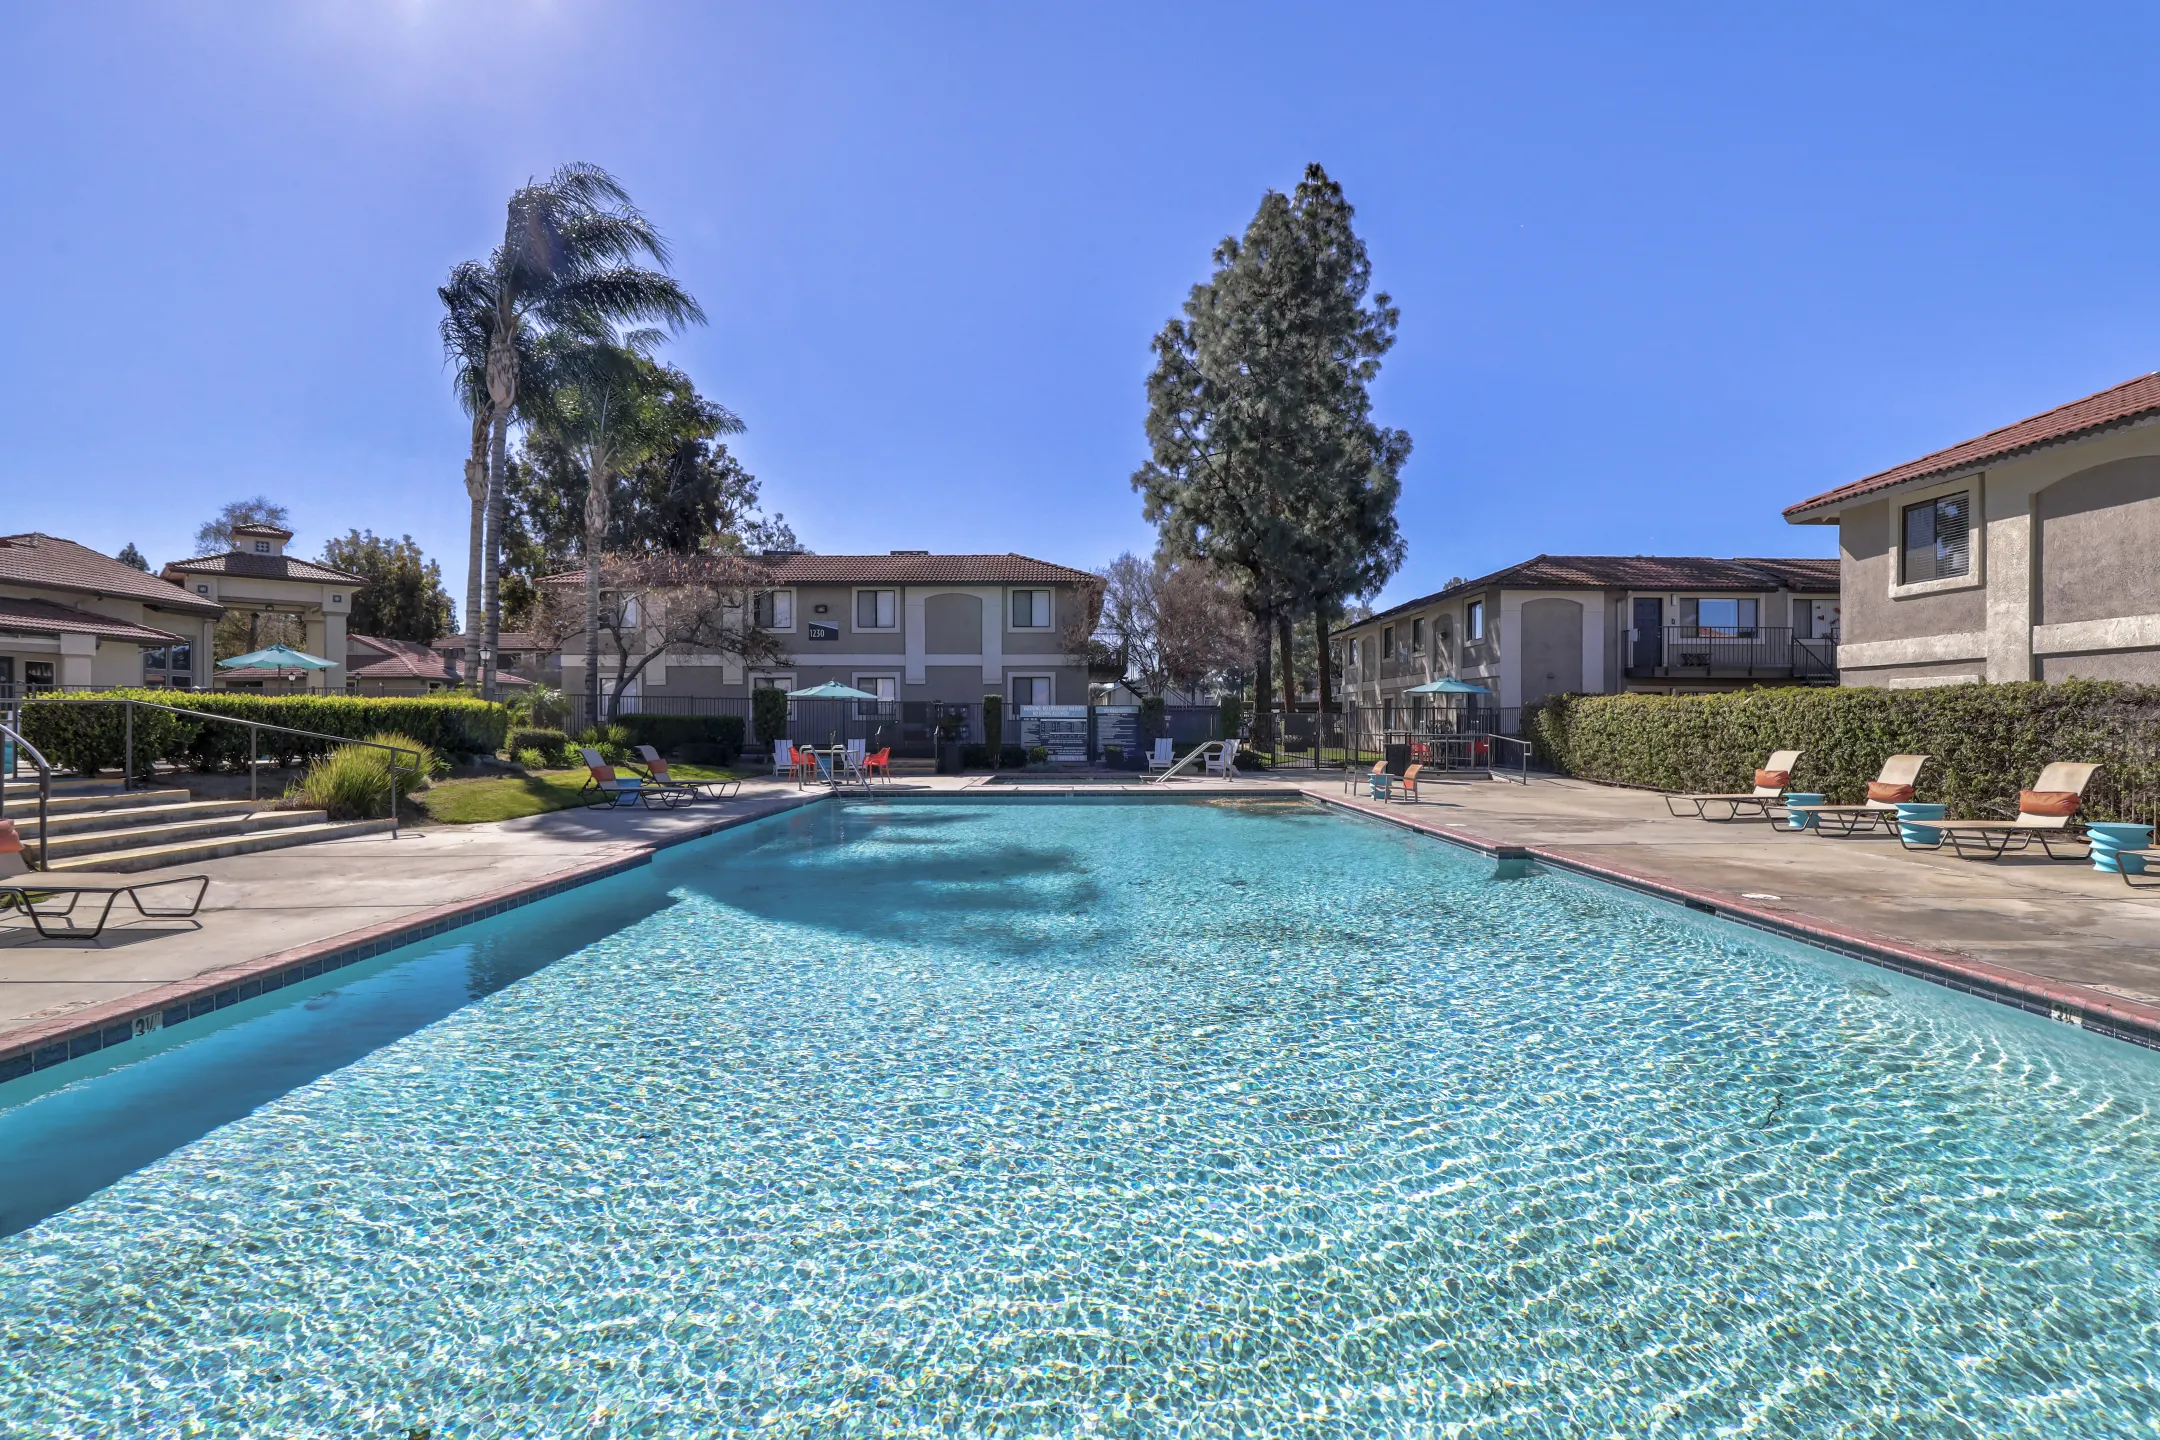 Pool - Berkdale Apartments - Riverside, CA